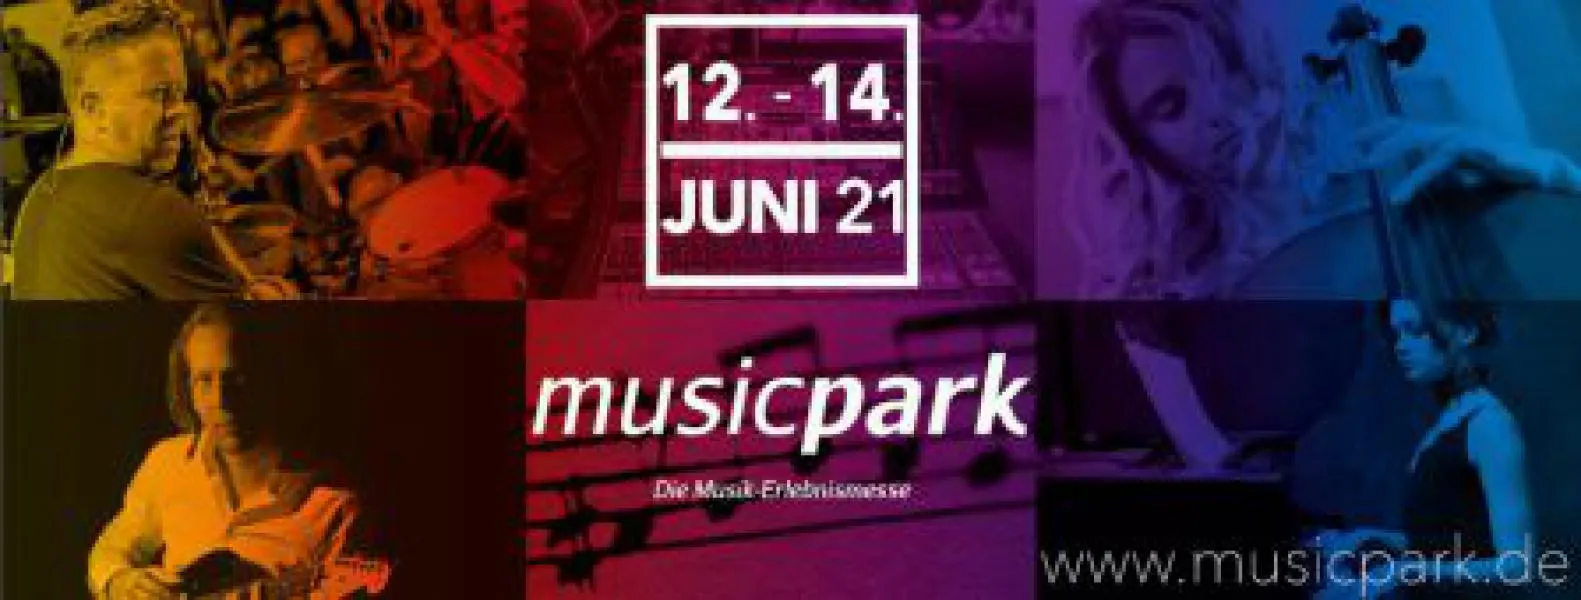 Musik-Erlebnismesse musicpark wechselt in den Juni 2021